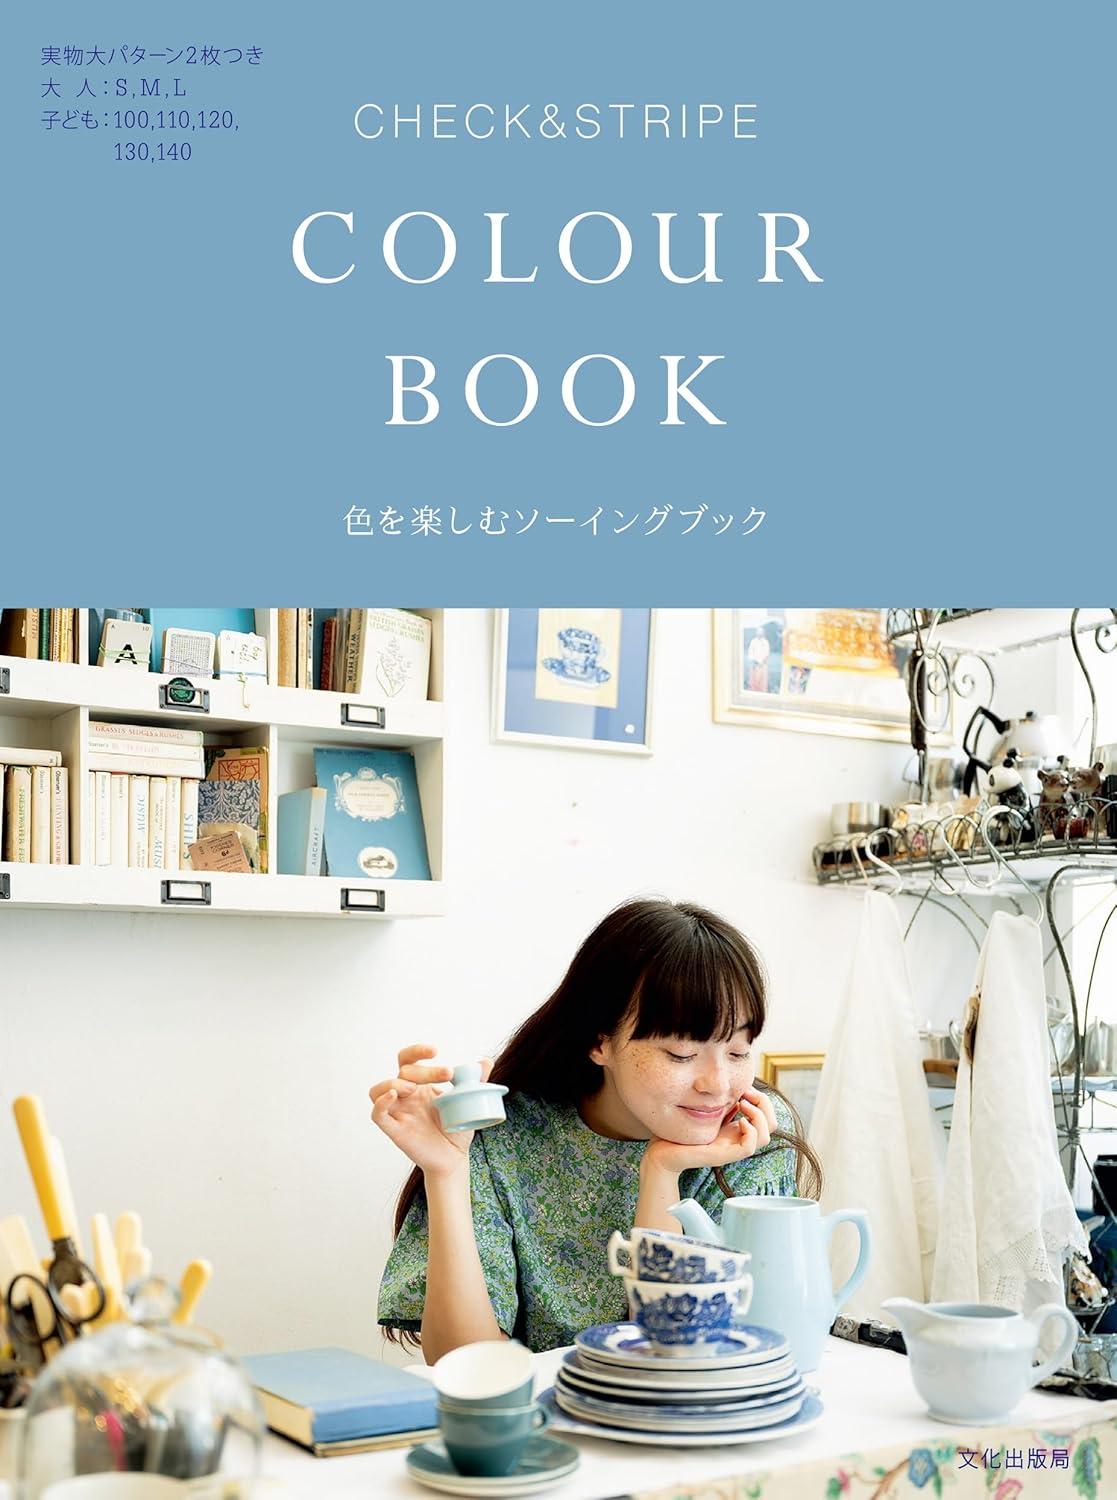 BKS11826 CHECK&STRIPE COLOUR BOOK 色を楽しむソーイングブック/文化出版局(冊)